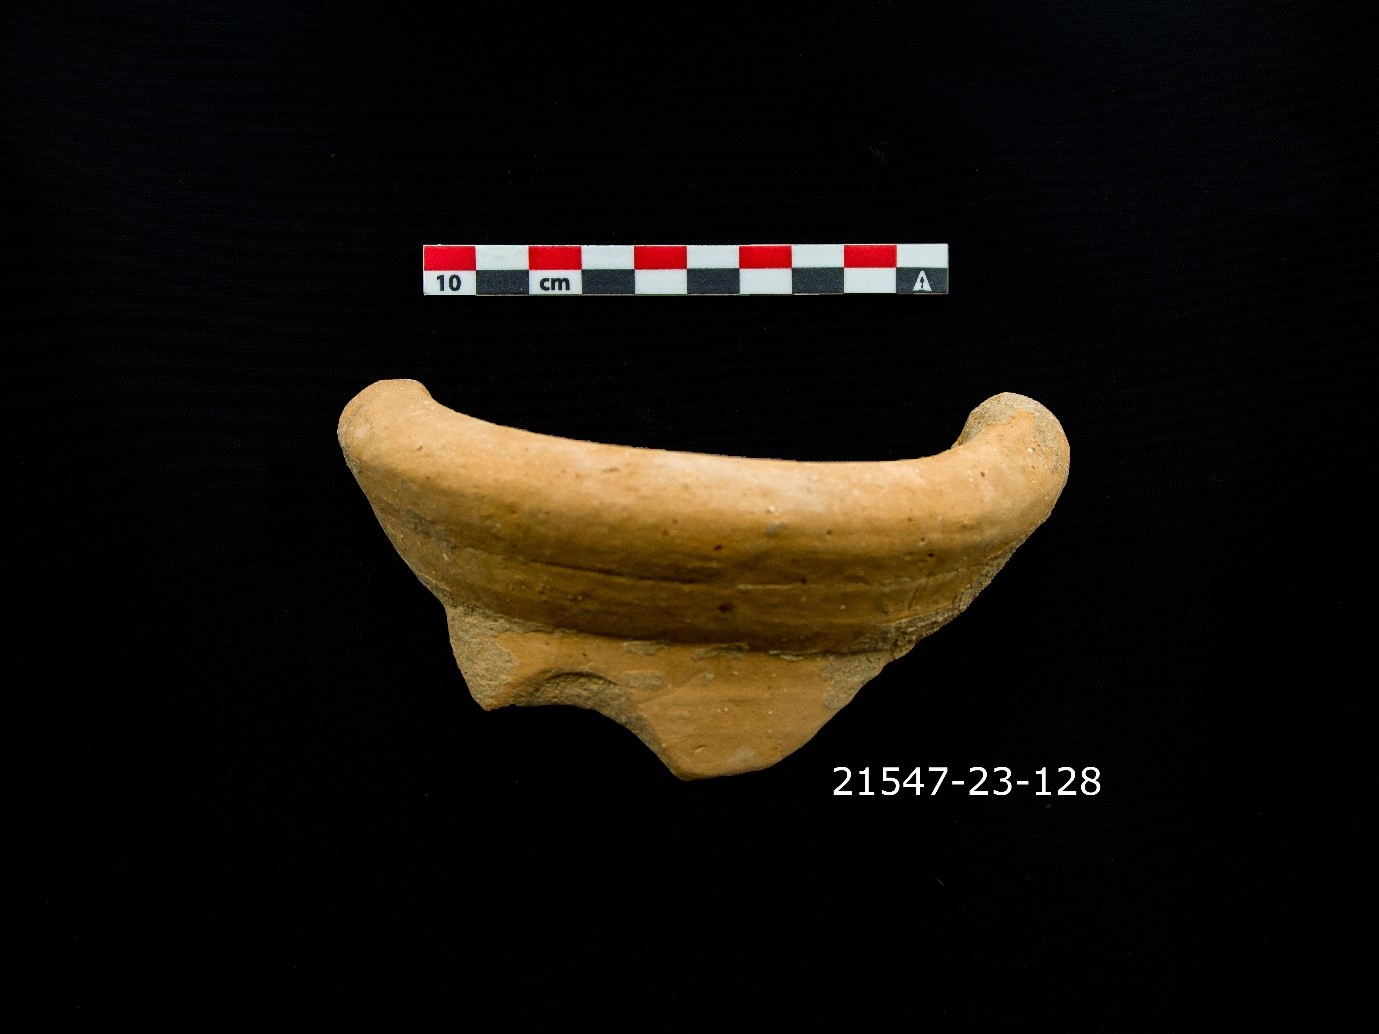 Figure 5. Rim of a Punic period amphora